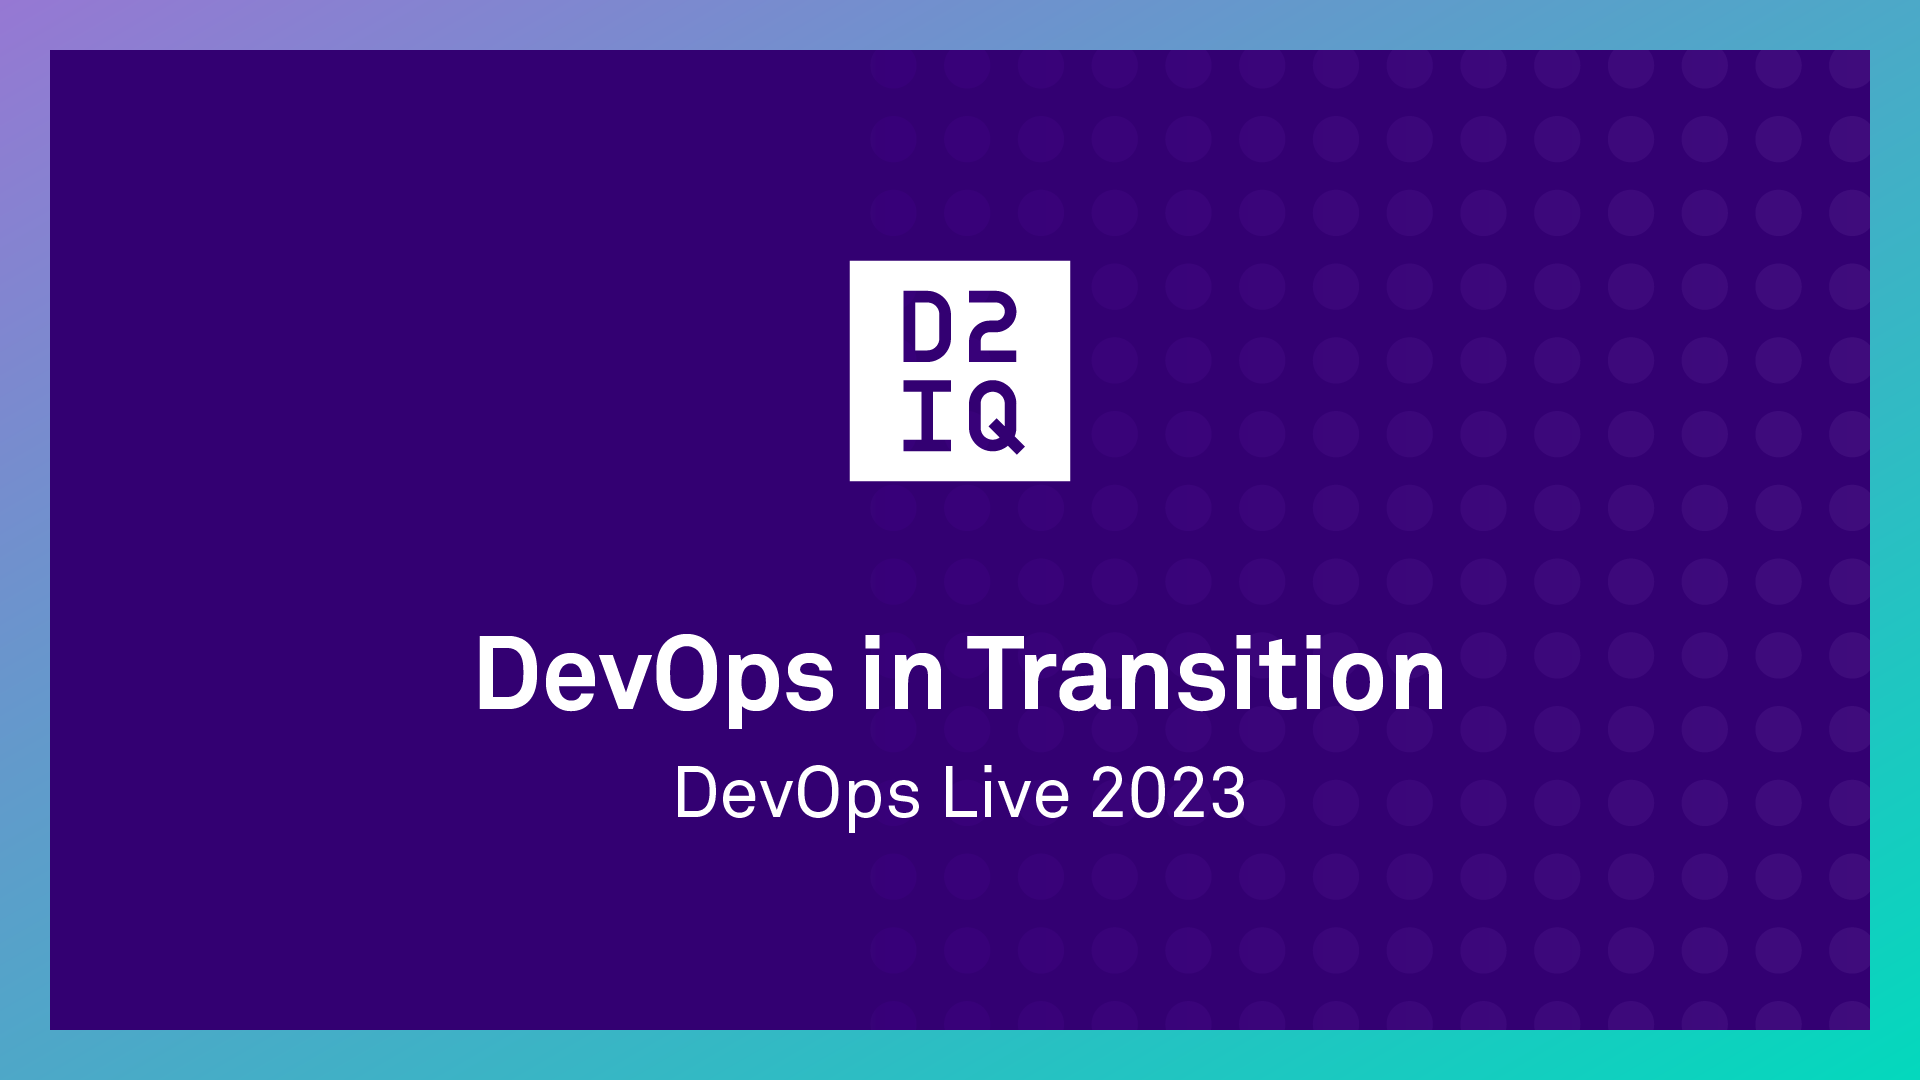 DevOps in Transition: DevOps Live 2023